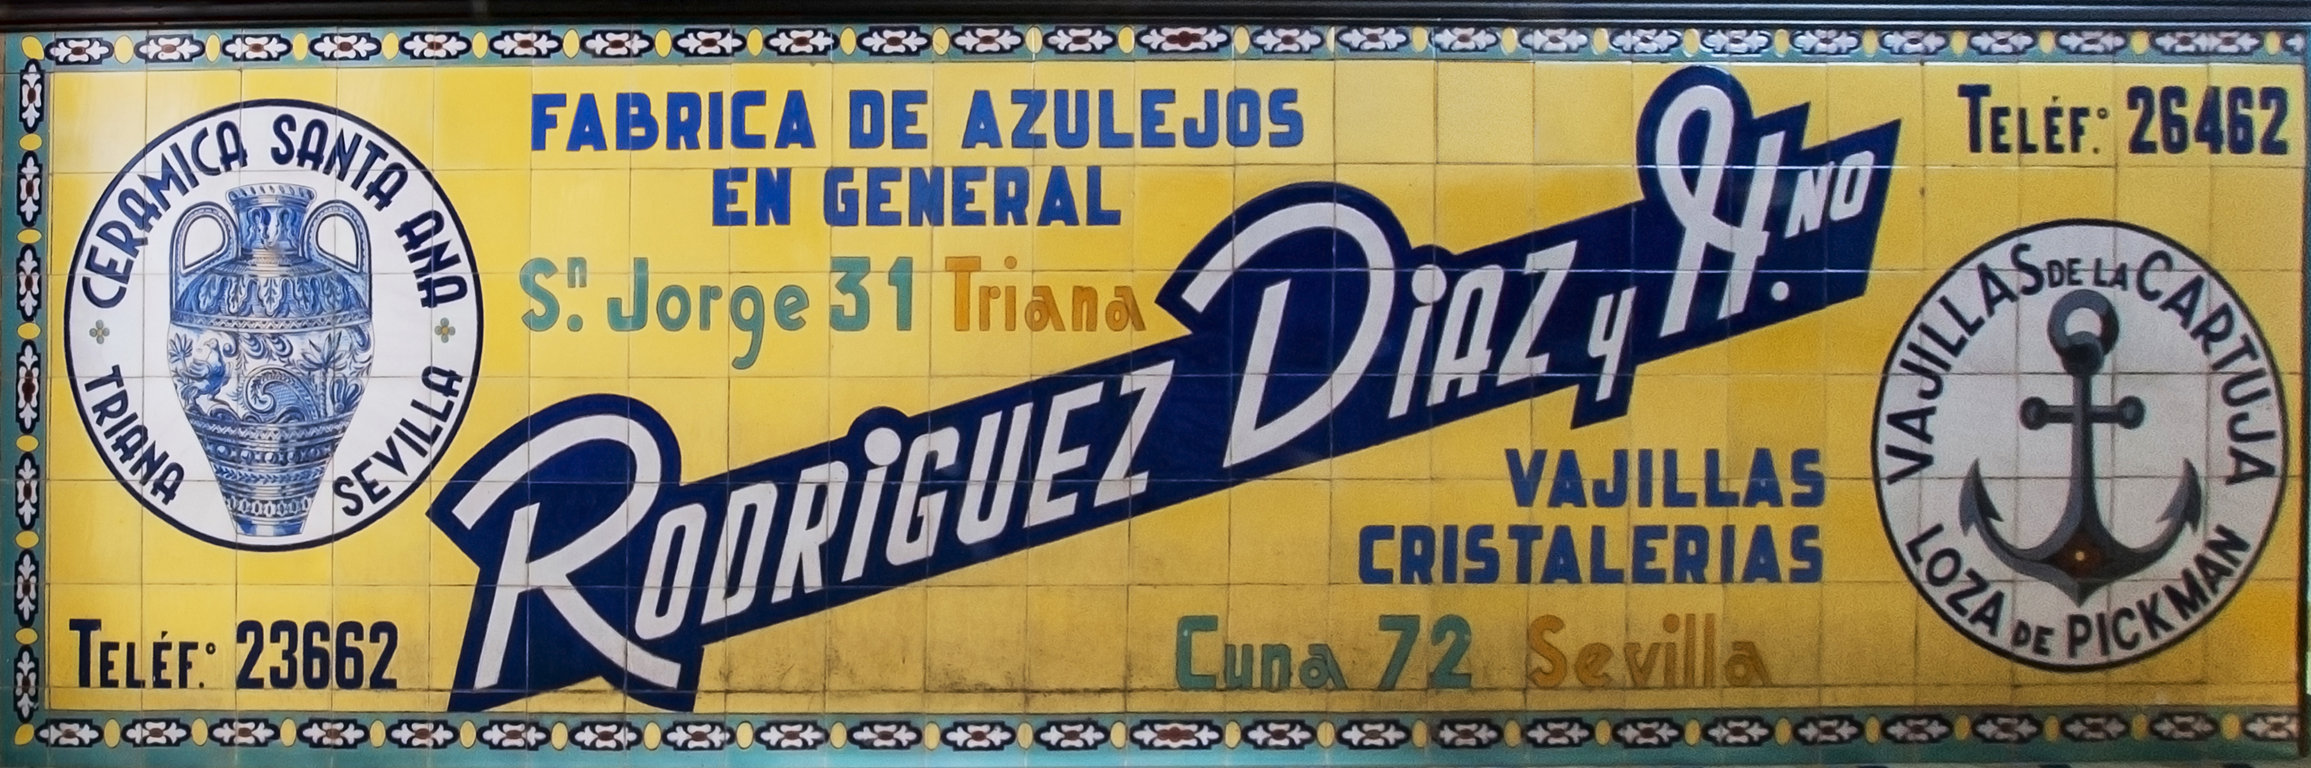 01648. Panel publicitario. Rodríguez Díaz y Hermano. Utrera. Sevilla.